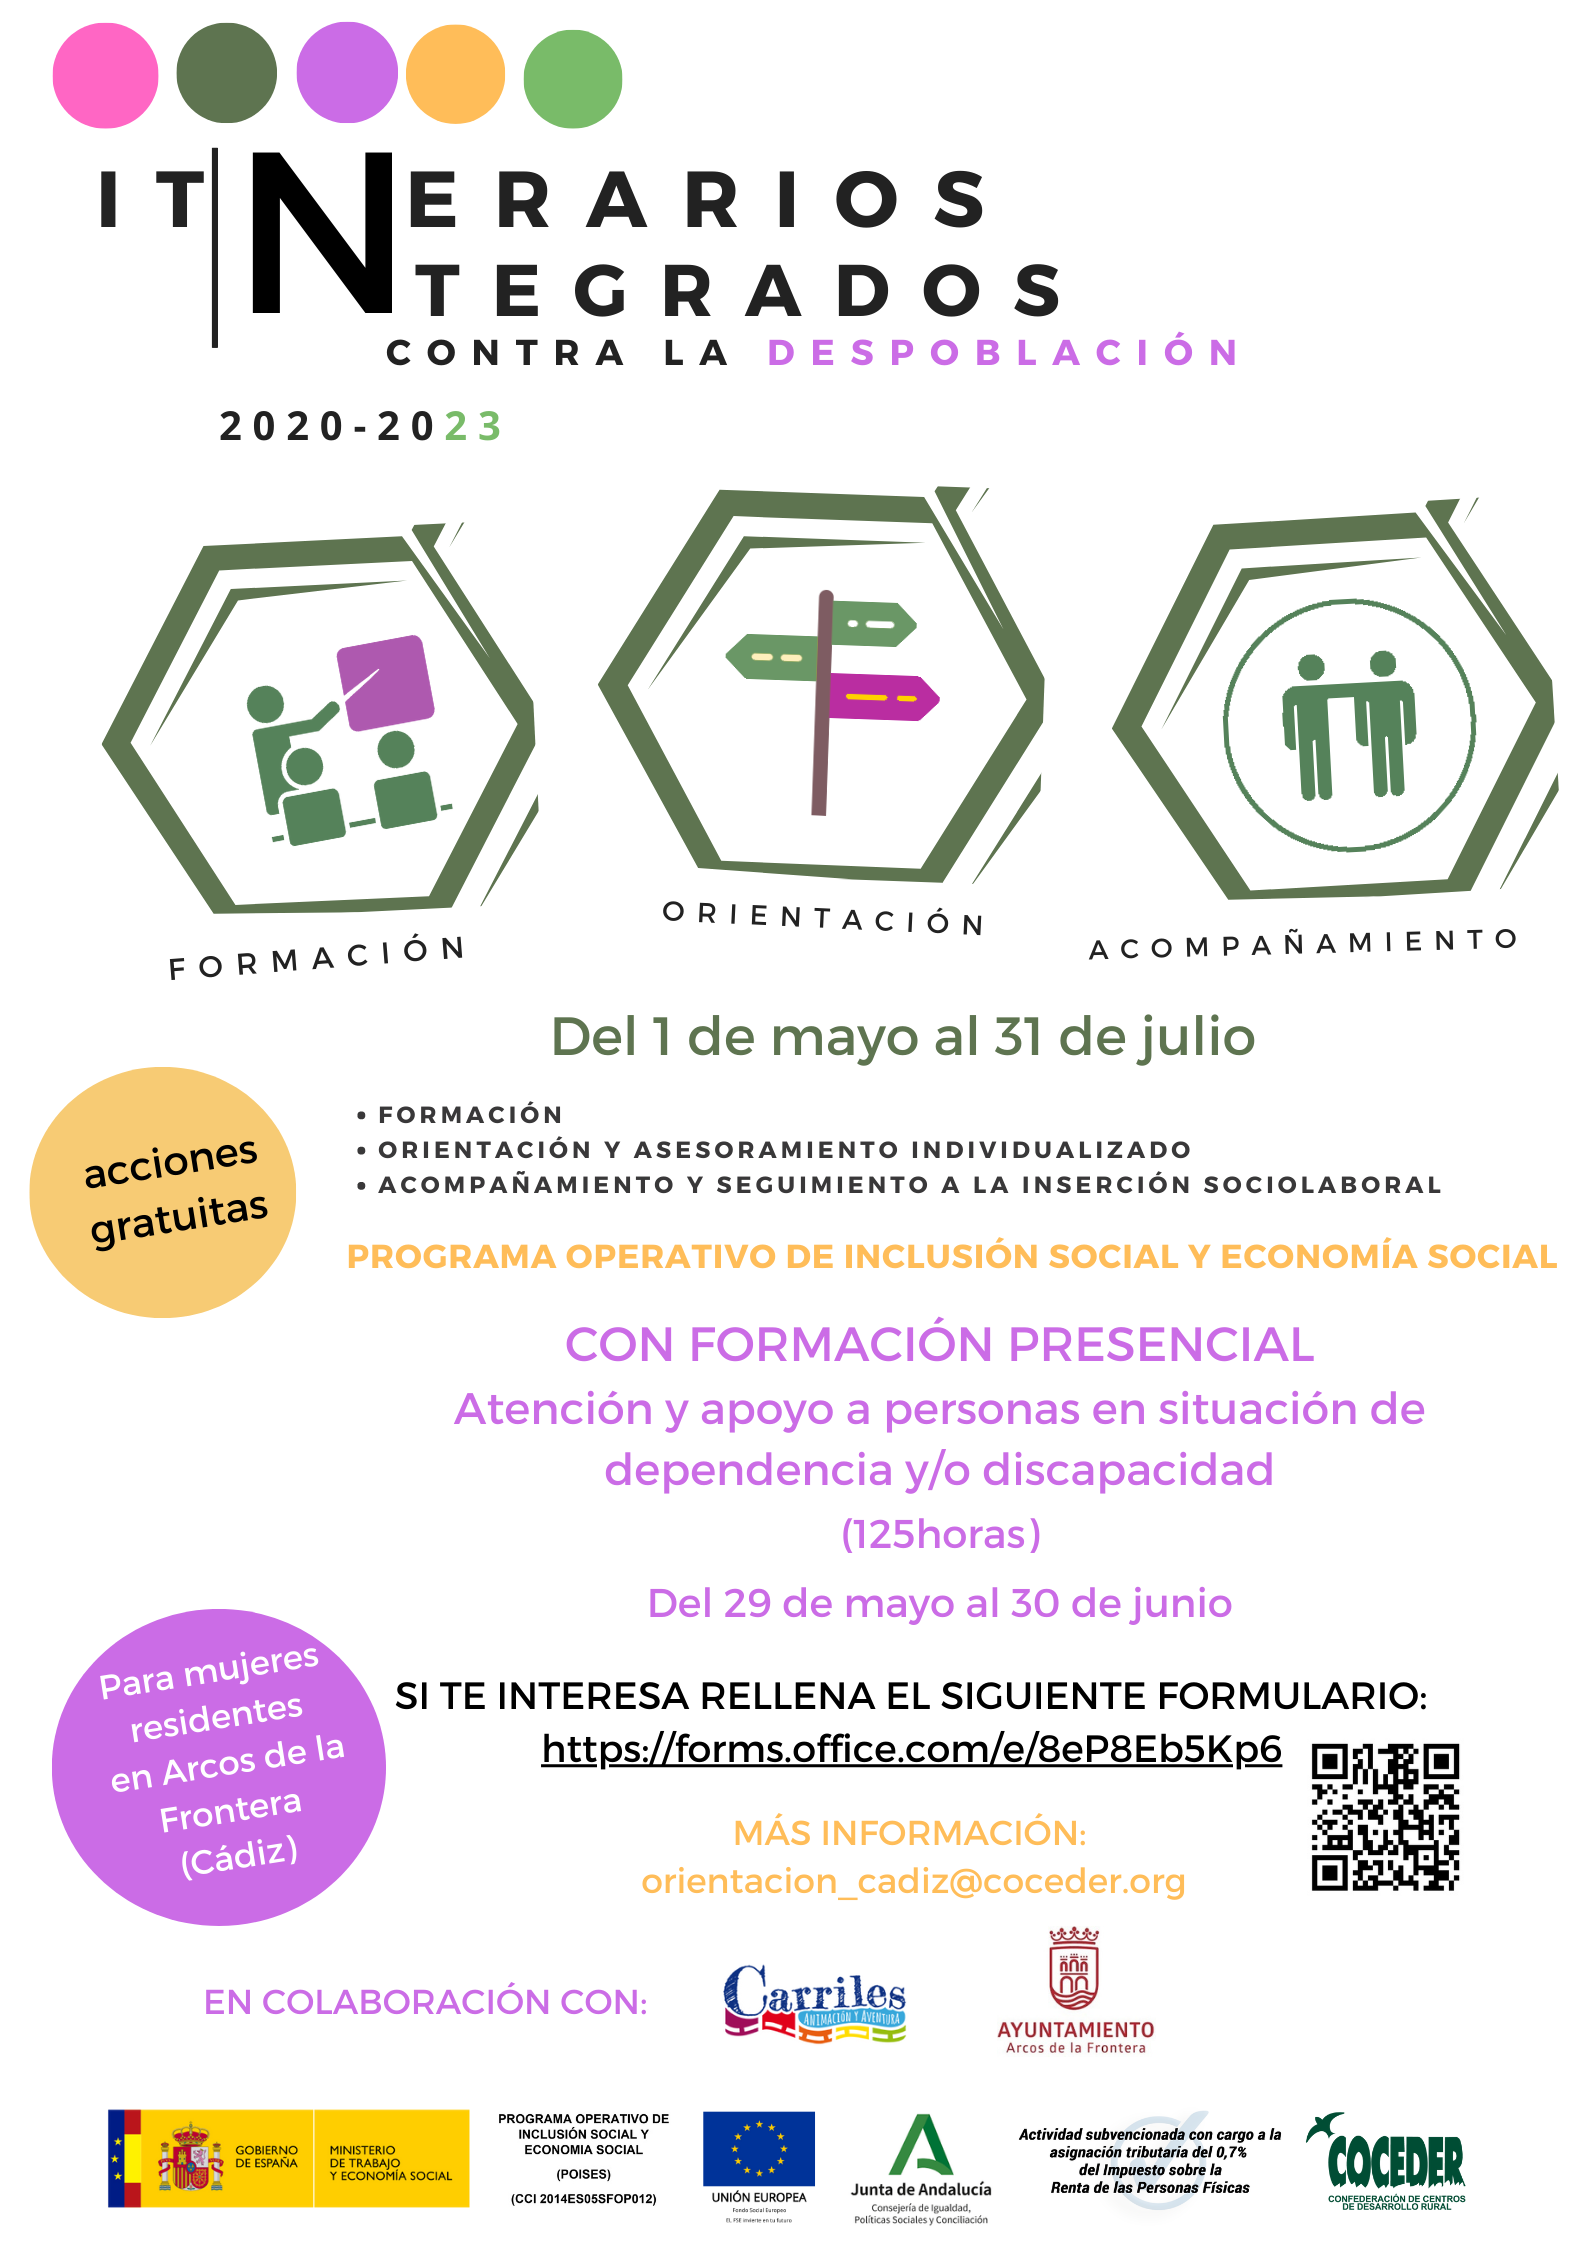 Cartel descriptivo del itinerario para mujeres residentes en Arcos de la Frontera con formación presencial sobre ayuda a la dependencia